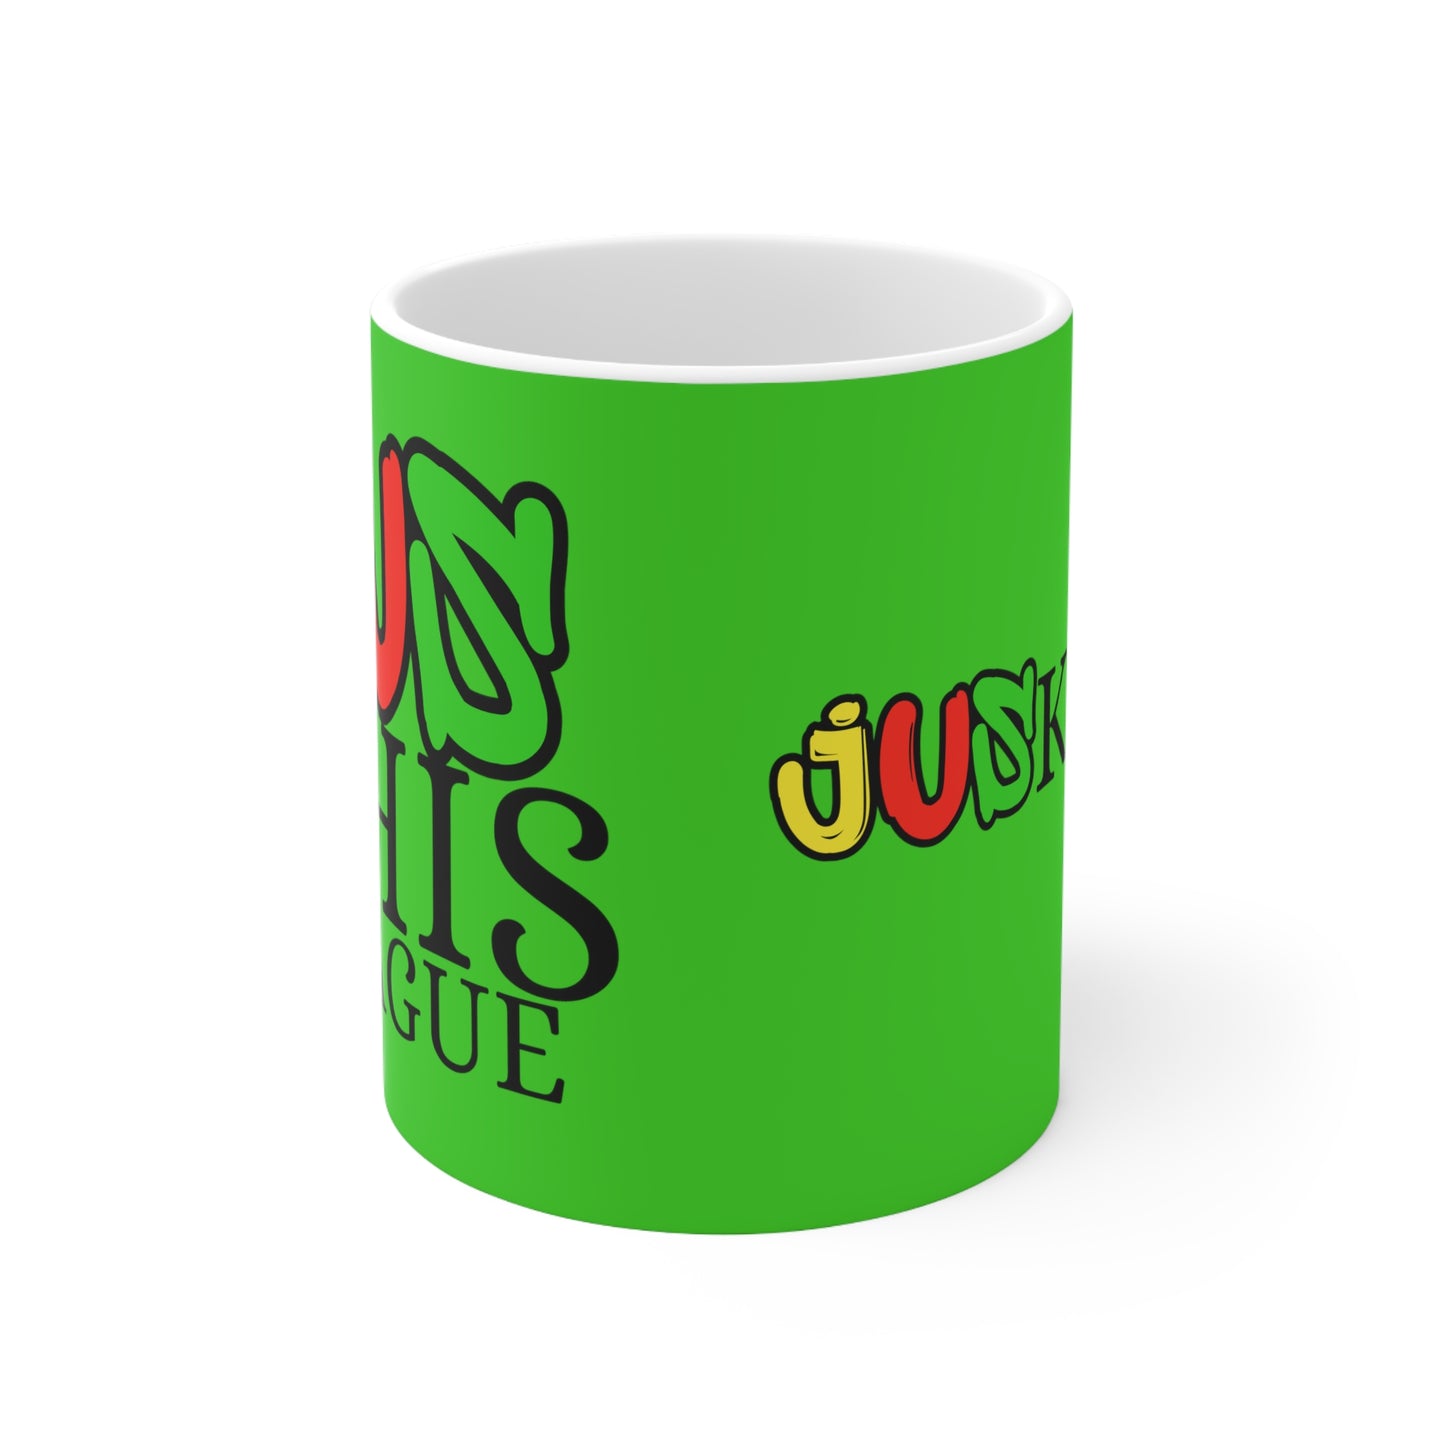 JUSKIND Green mug 11oz